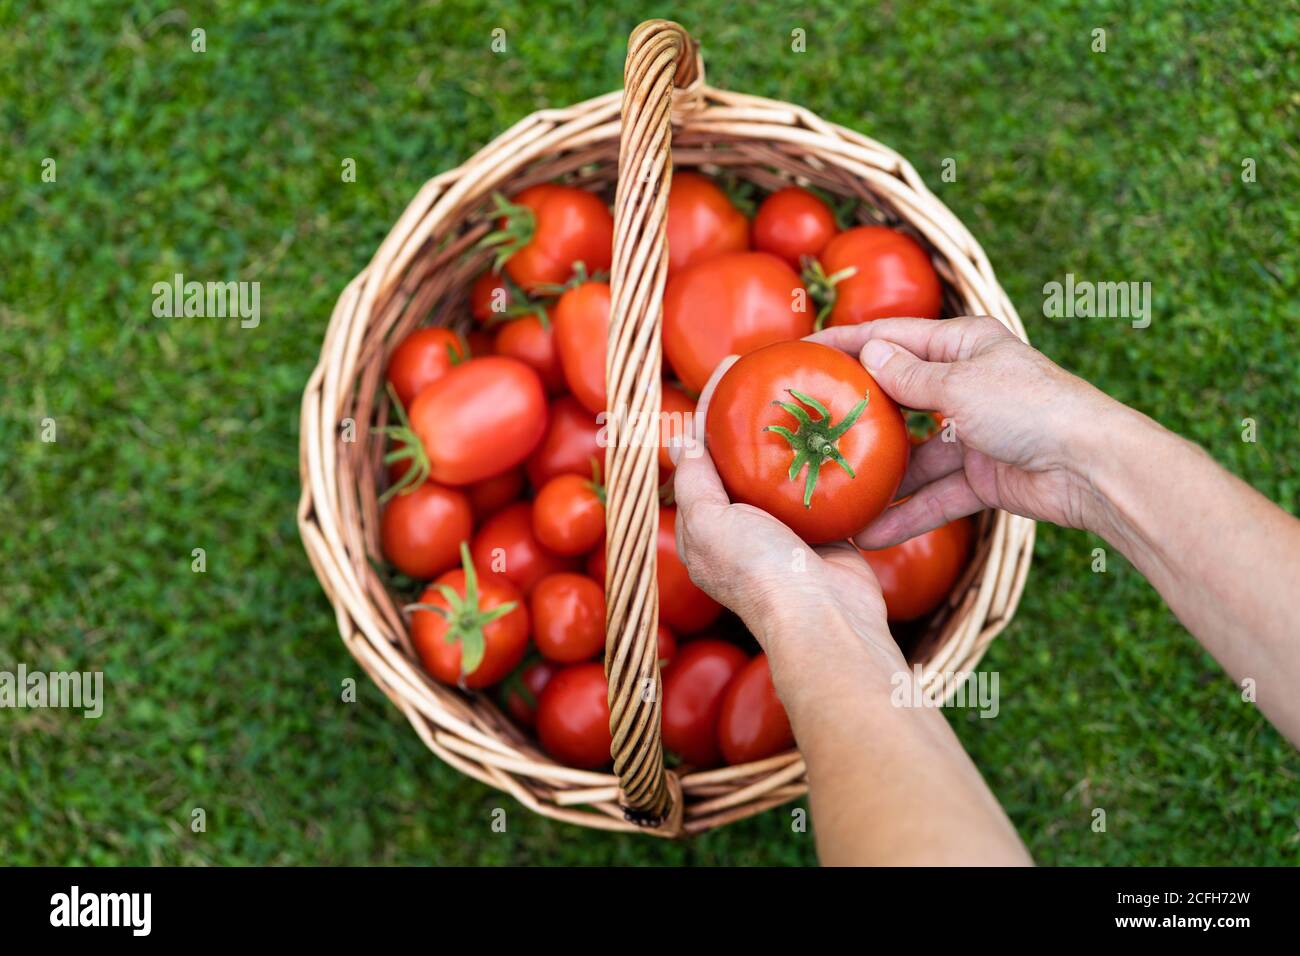 Vista dall'alto delle mani dei contadini che tengono pomodori maturi raccolti, cestino con pomodori appena raccolti su erba verde. Giardinaggio e agricoltura. Foto Stock